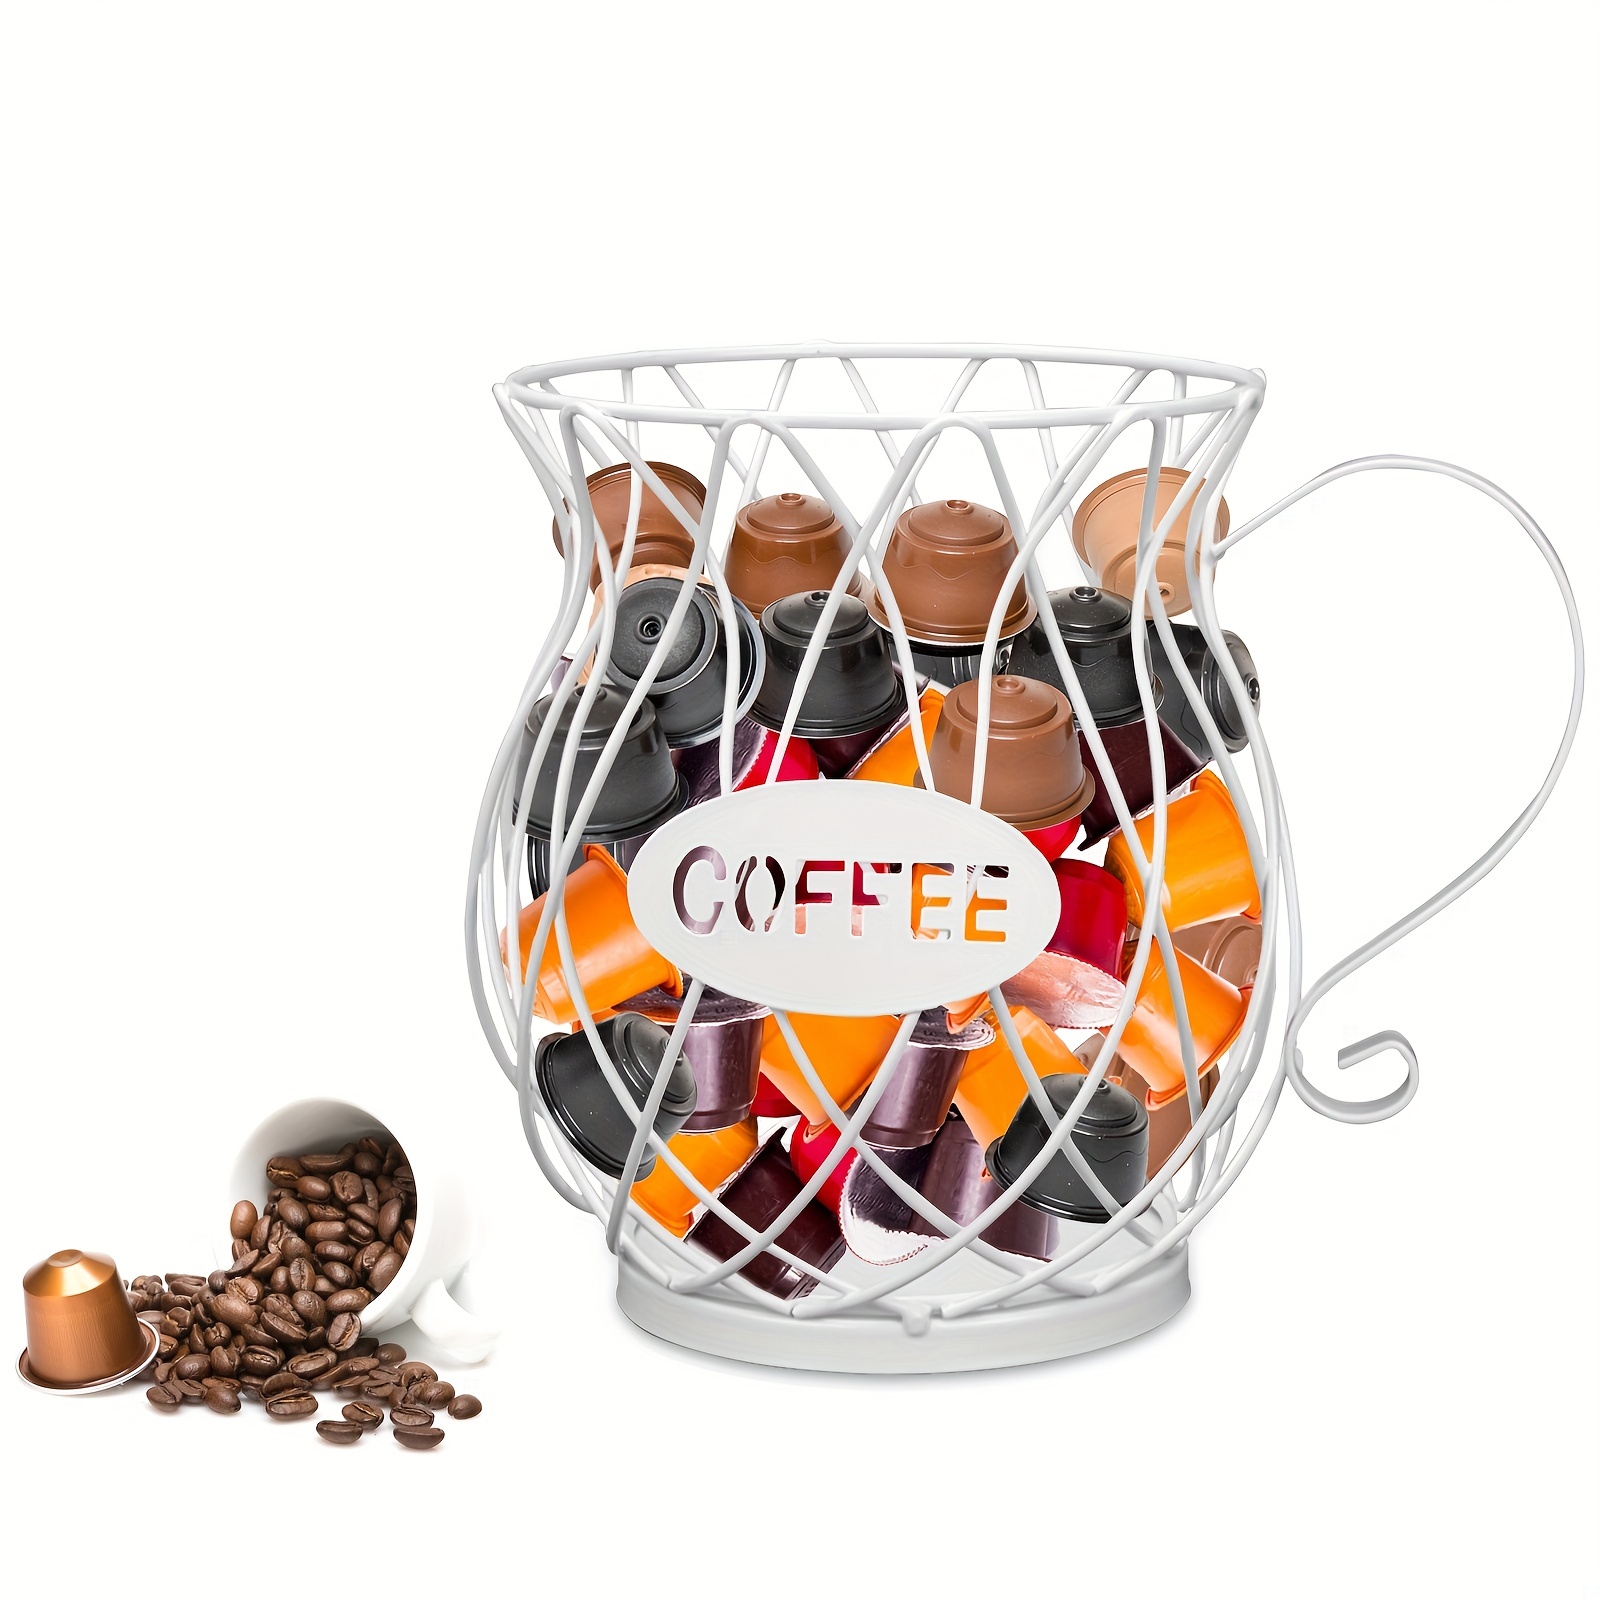 K-Cup - Soporte para cápsulas de café, cajón de almacenamiento para  cápsulas Nespresso y Dolce Gusto, organizador con capacidad de 20 cápsulas,  color